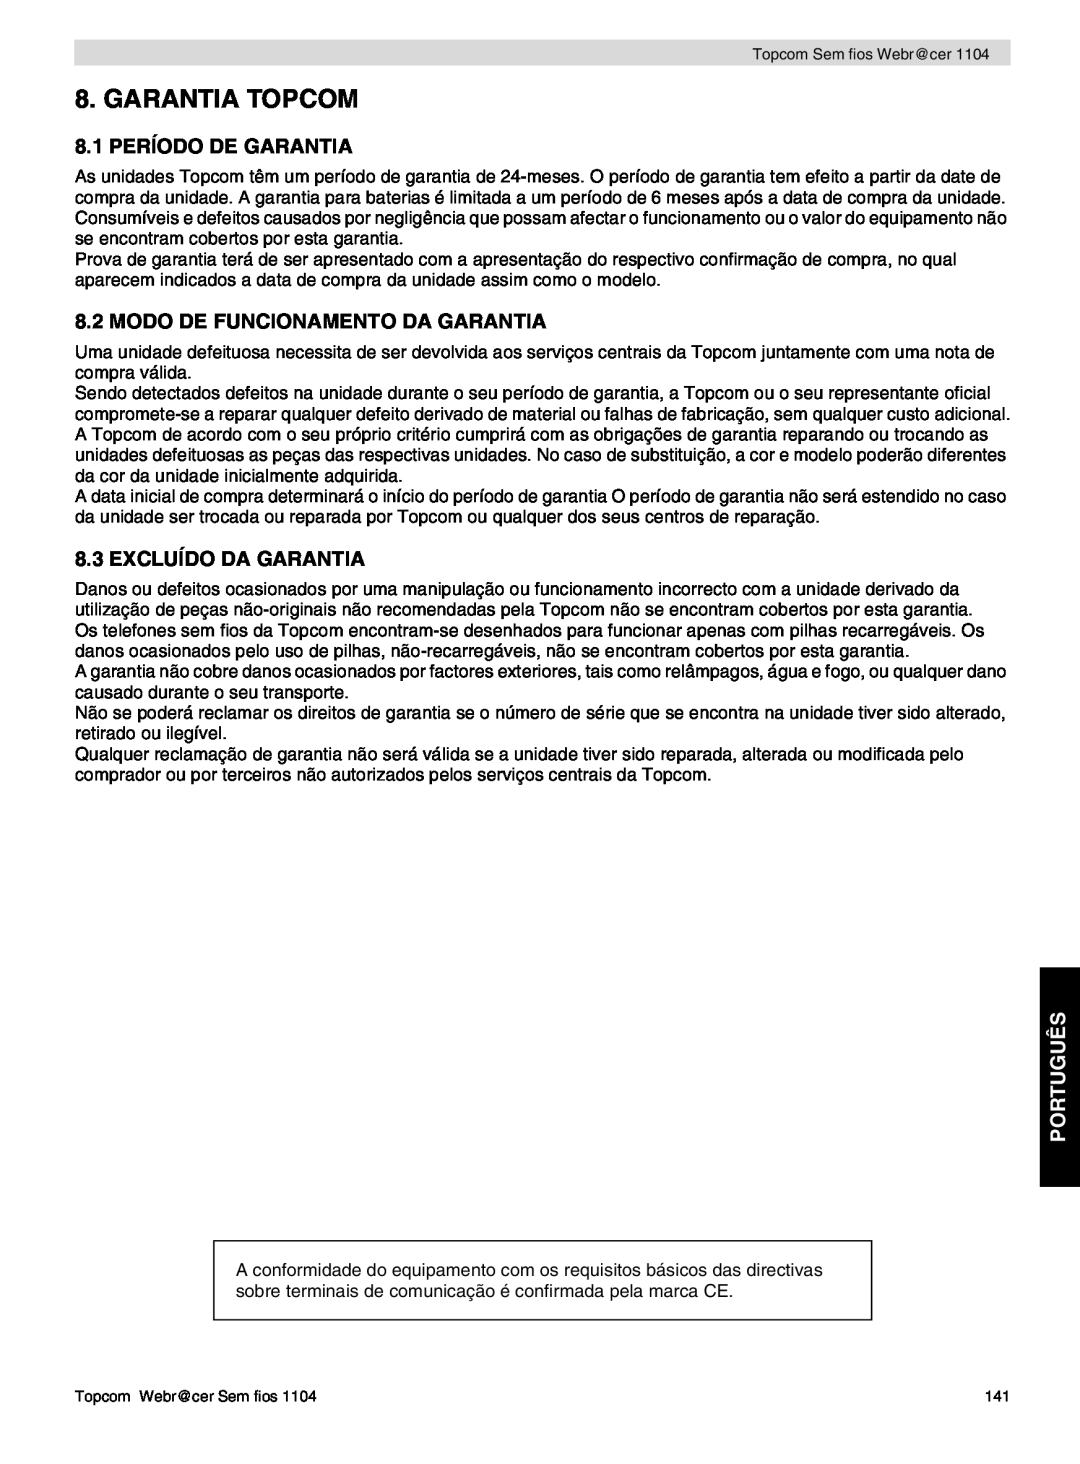 Topcom 1104 Garantia Topcom, 8.1 PERÍODO DE GARANTIA, Modo De Funcionamento Da Garantia, Excluído Da Garantia, Português 